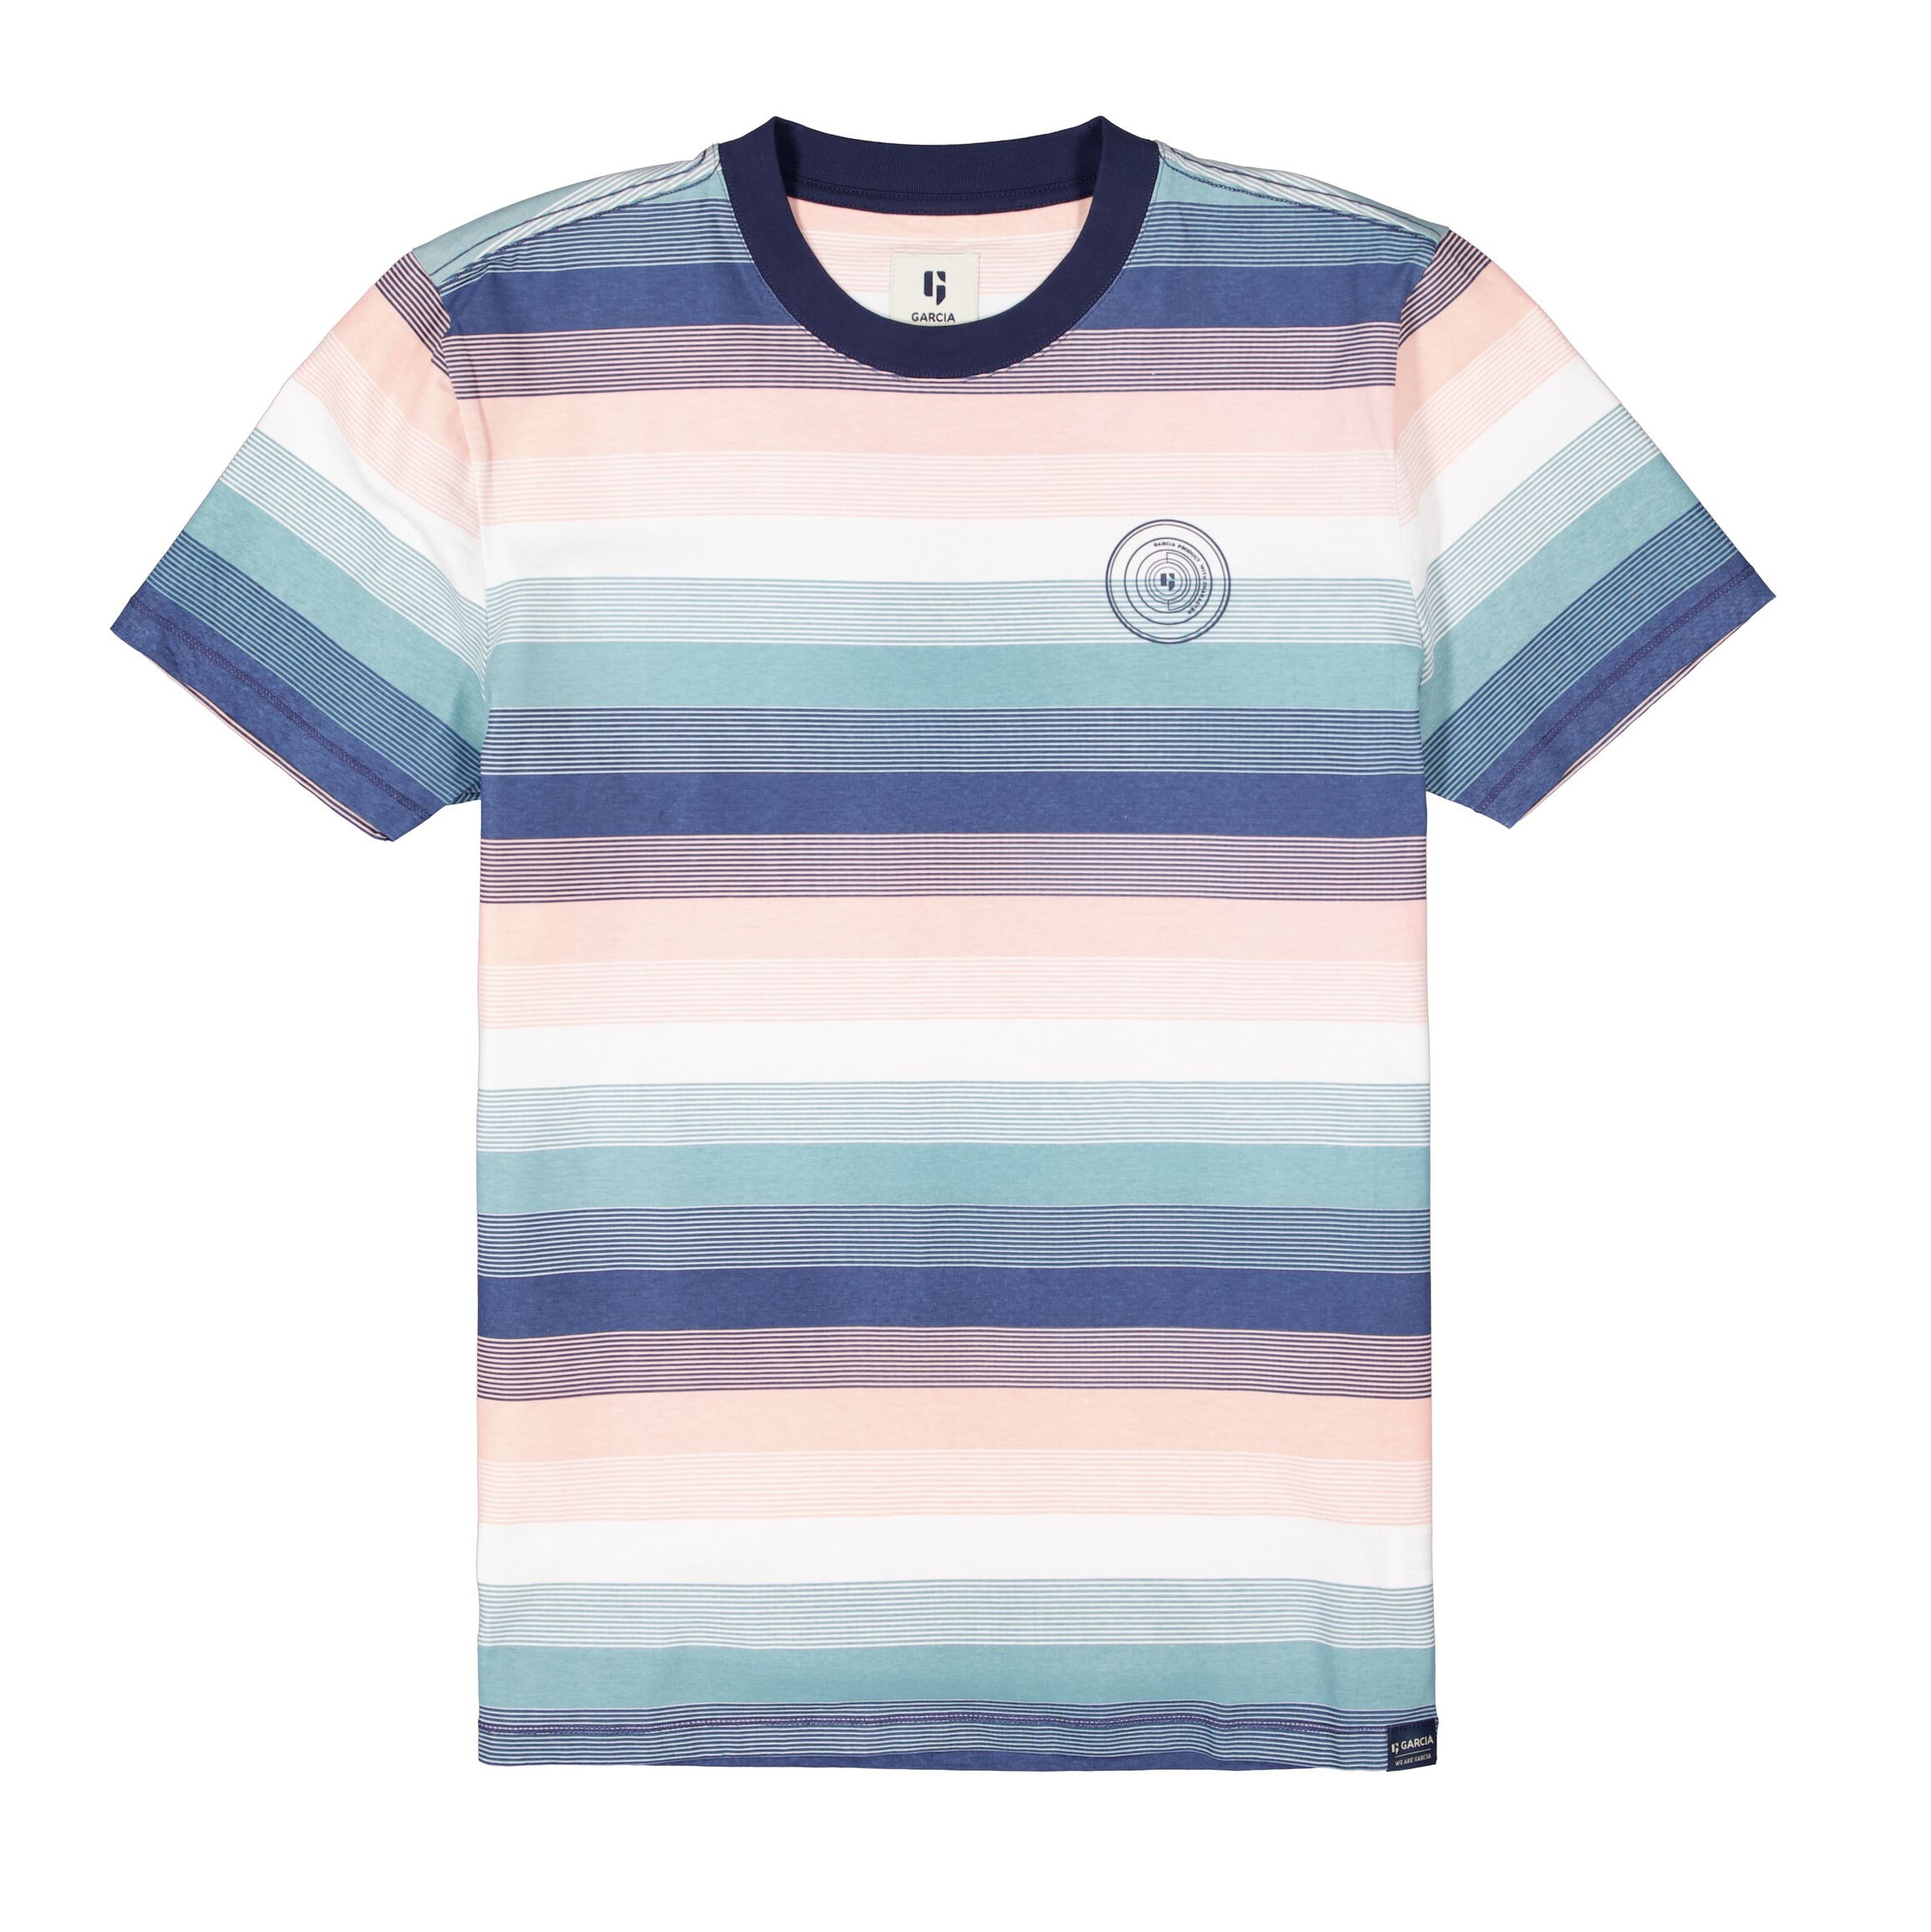 Garcia Herren T-Shirt Shirt kurzarm mehrfarbig gestreift E11005 4962 denim blue